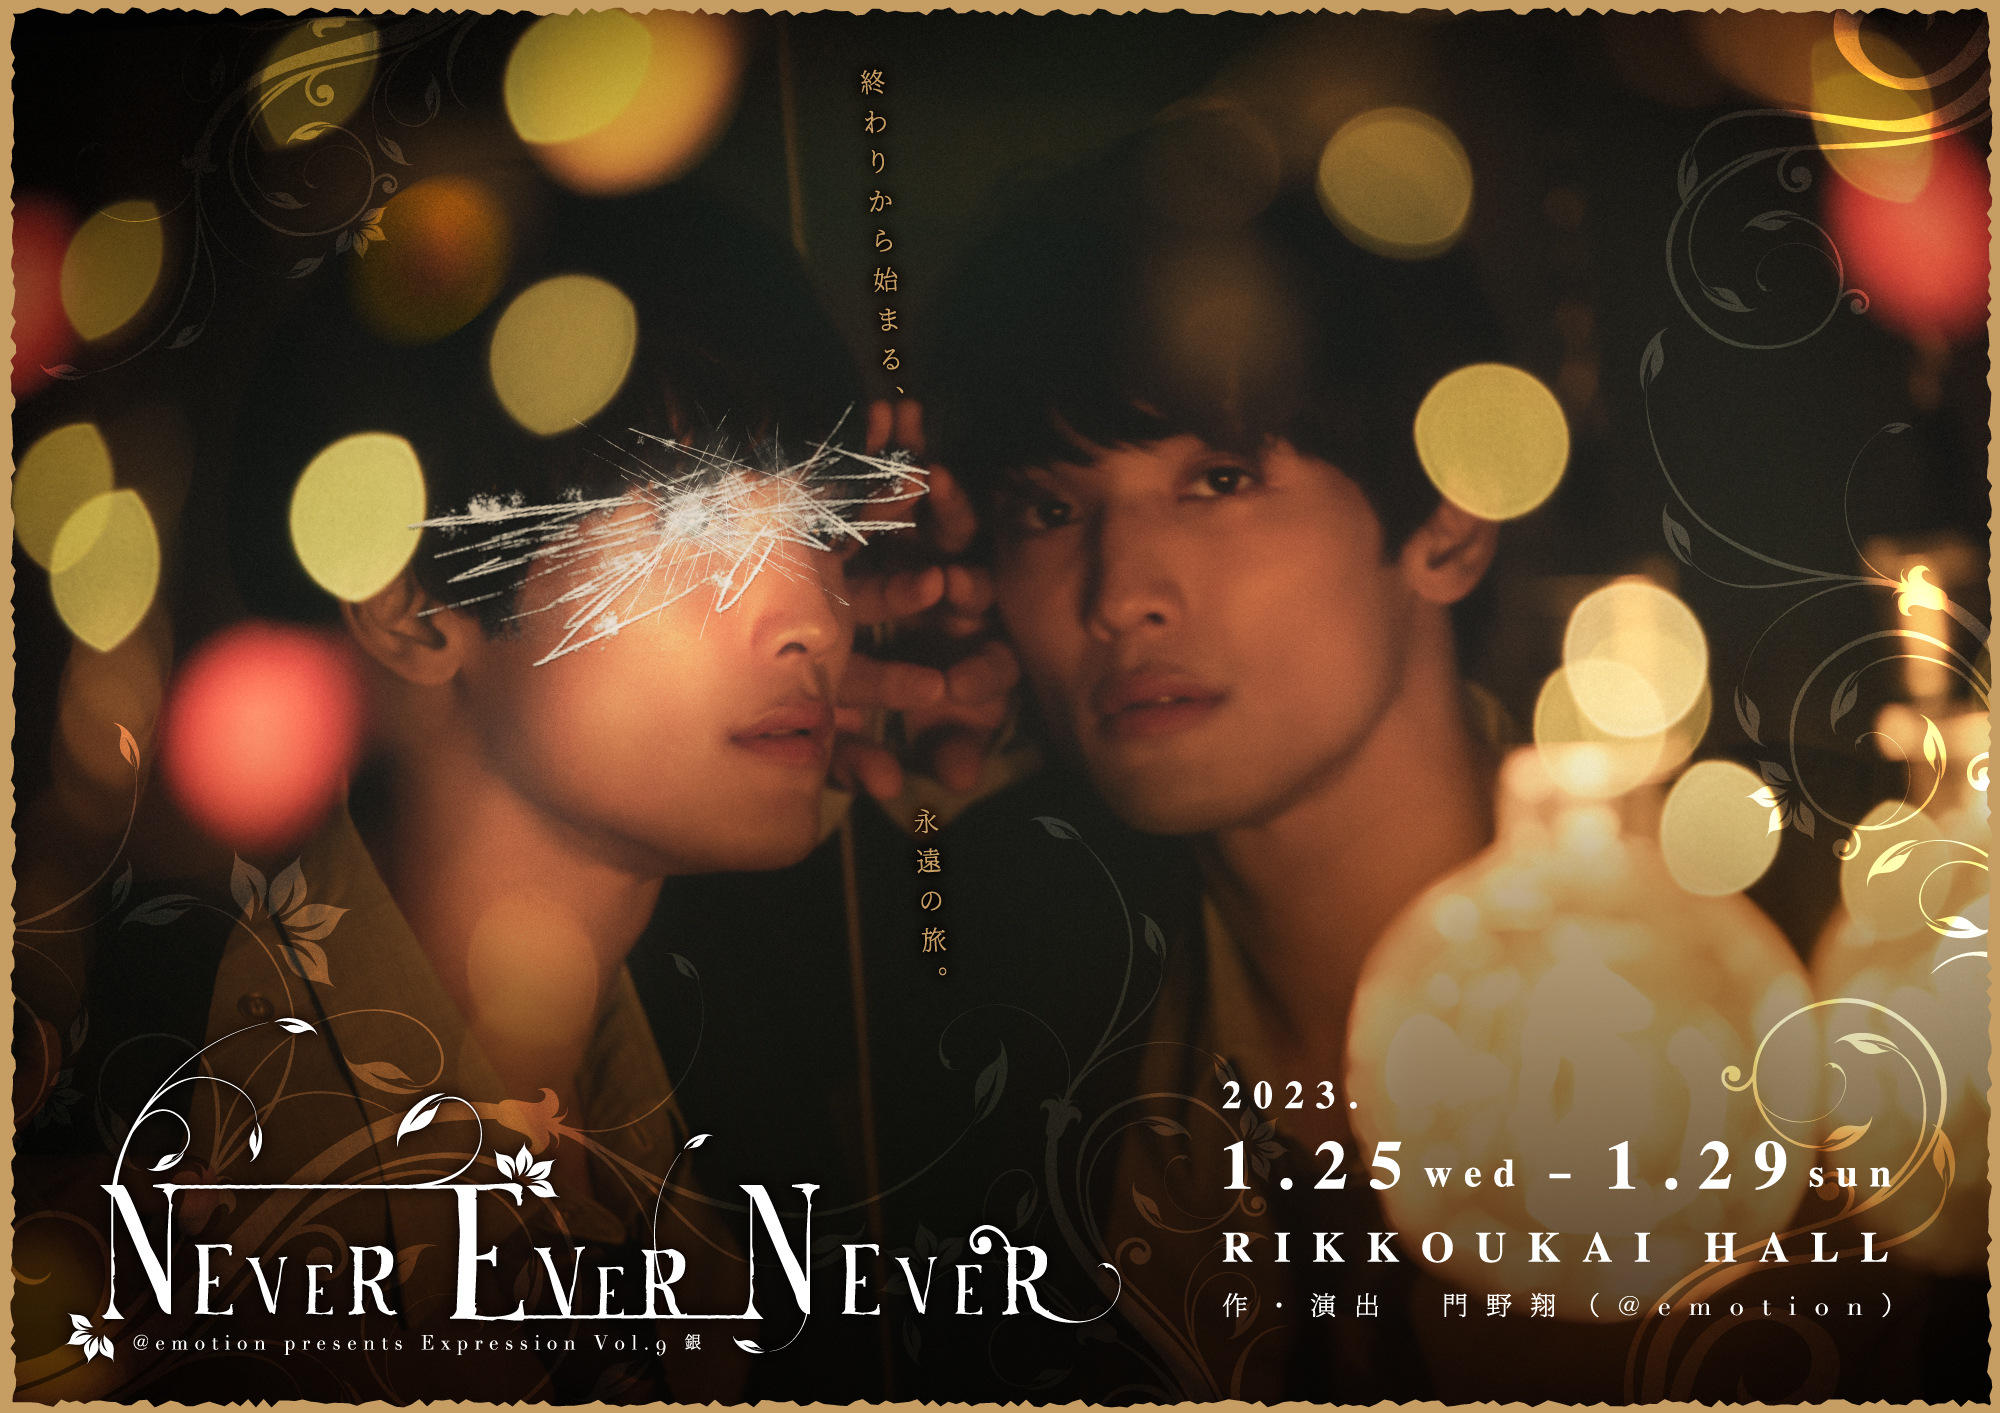 和泉元彌特別出演も決定 @emotion『NEVER EVER NEVER』全キャスト 